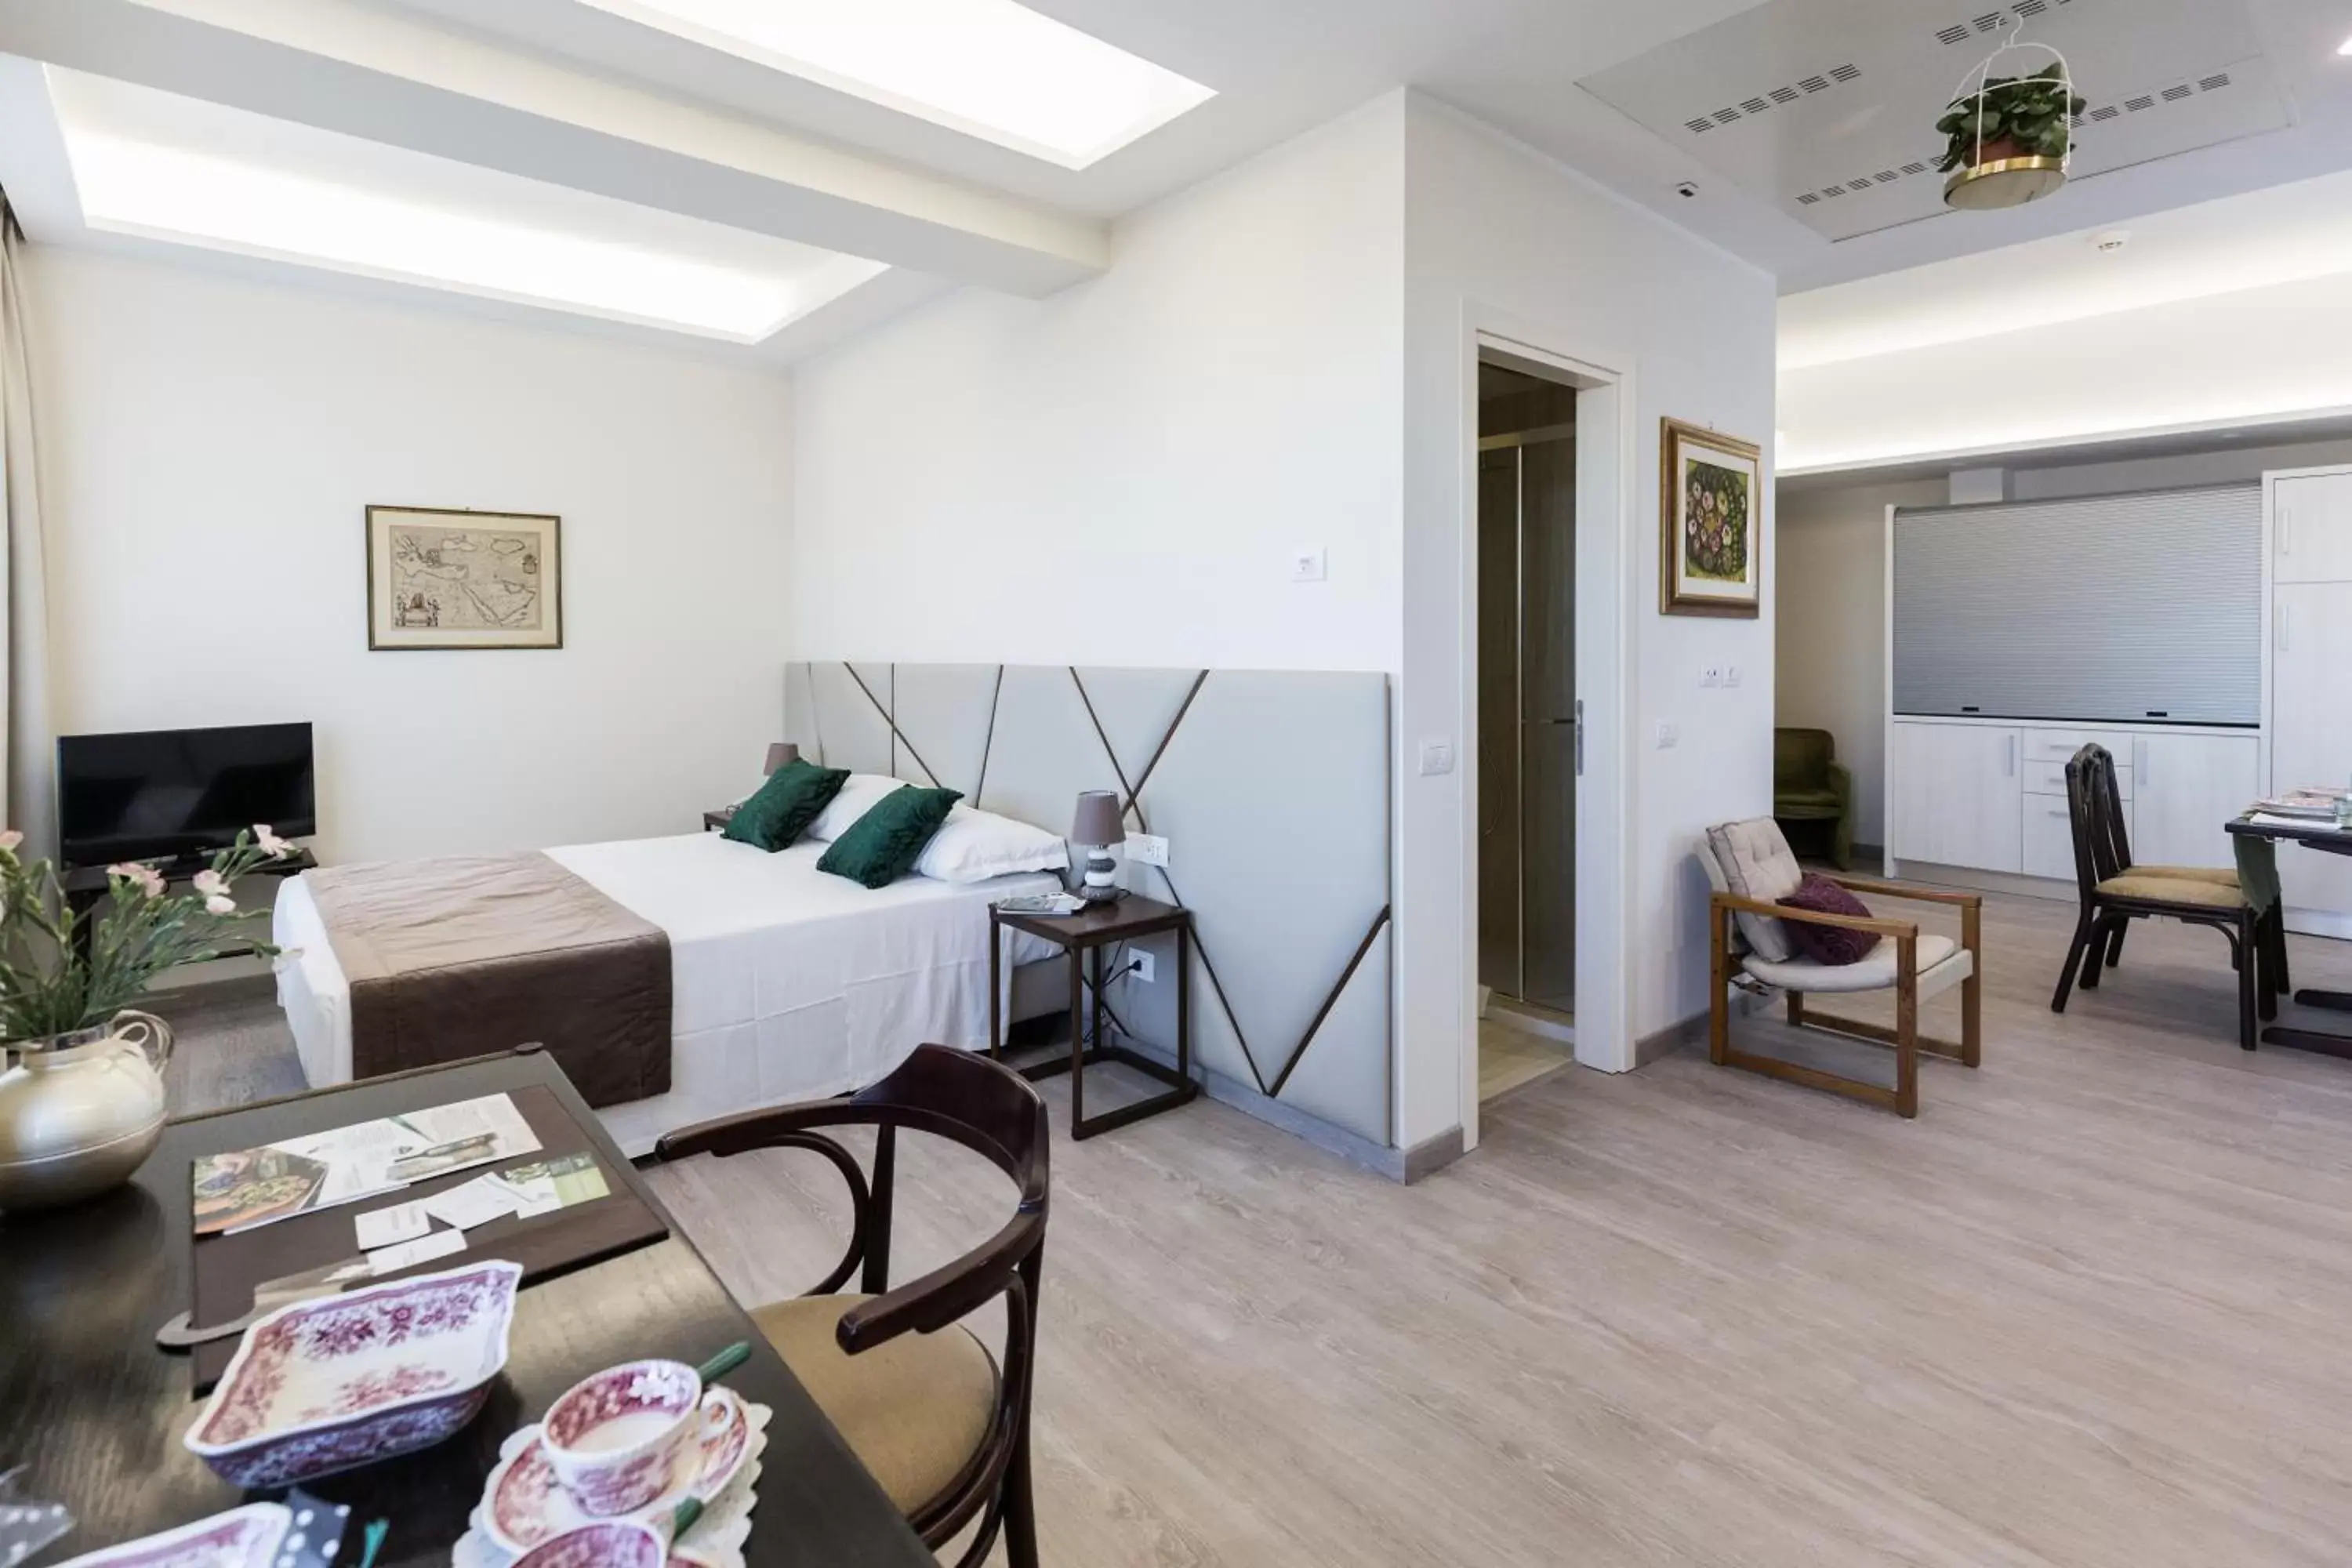 Photo of the whole room in Villa Cavalletti Appartamenti